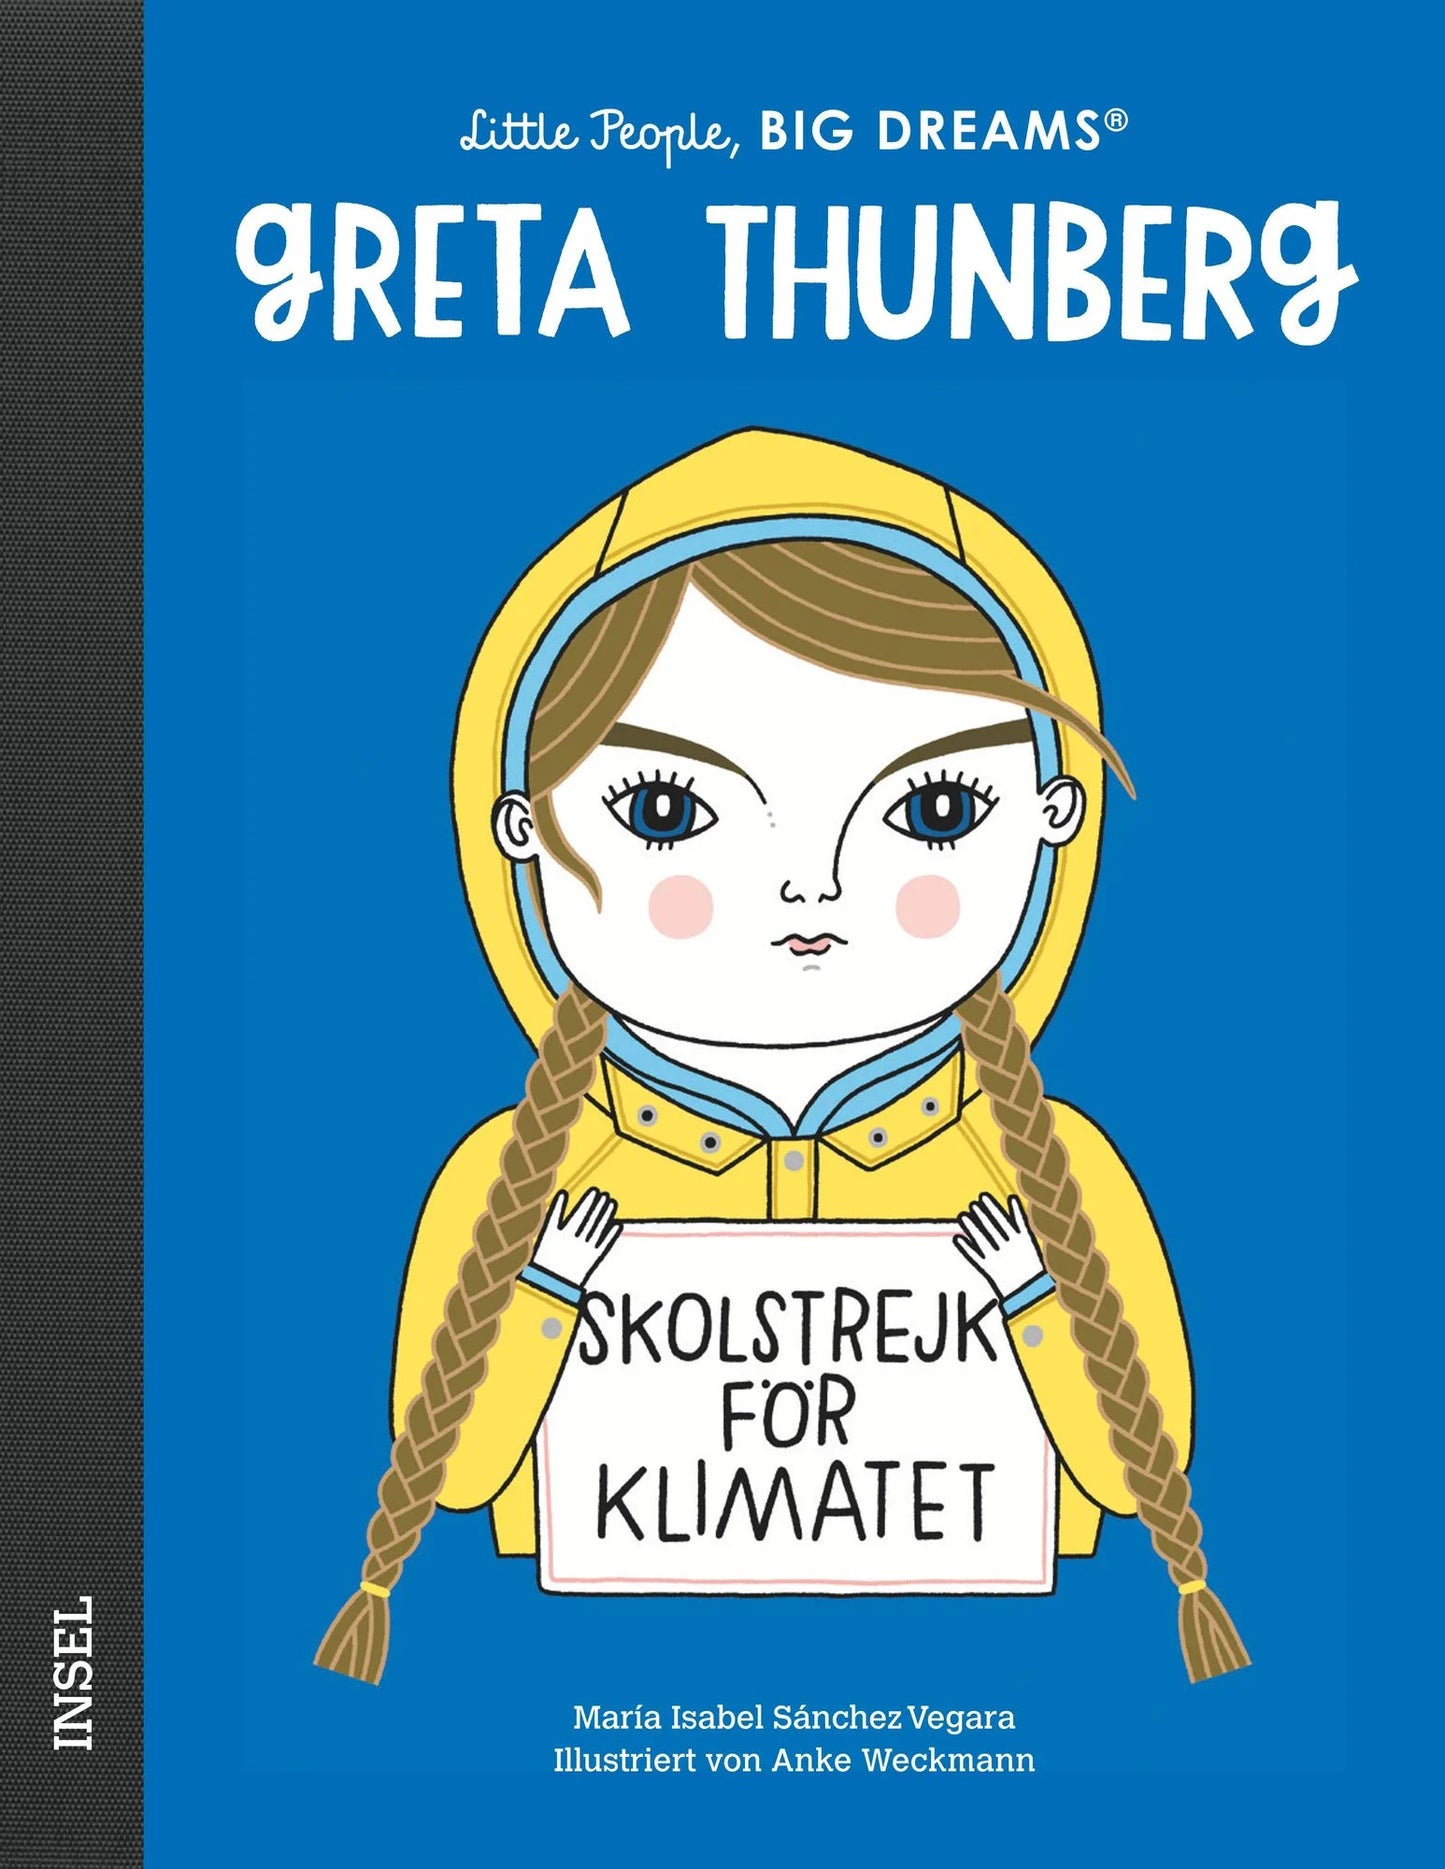 Little People, Big Dreams, Greta Thunberg